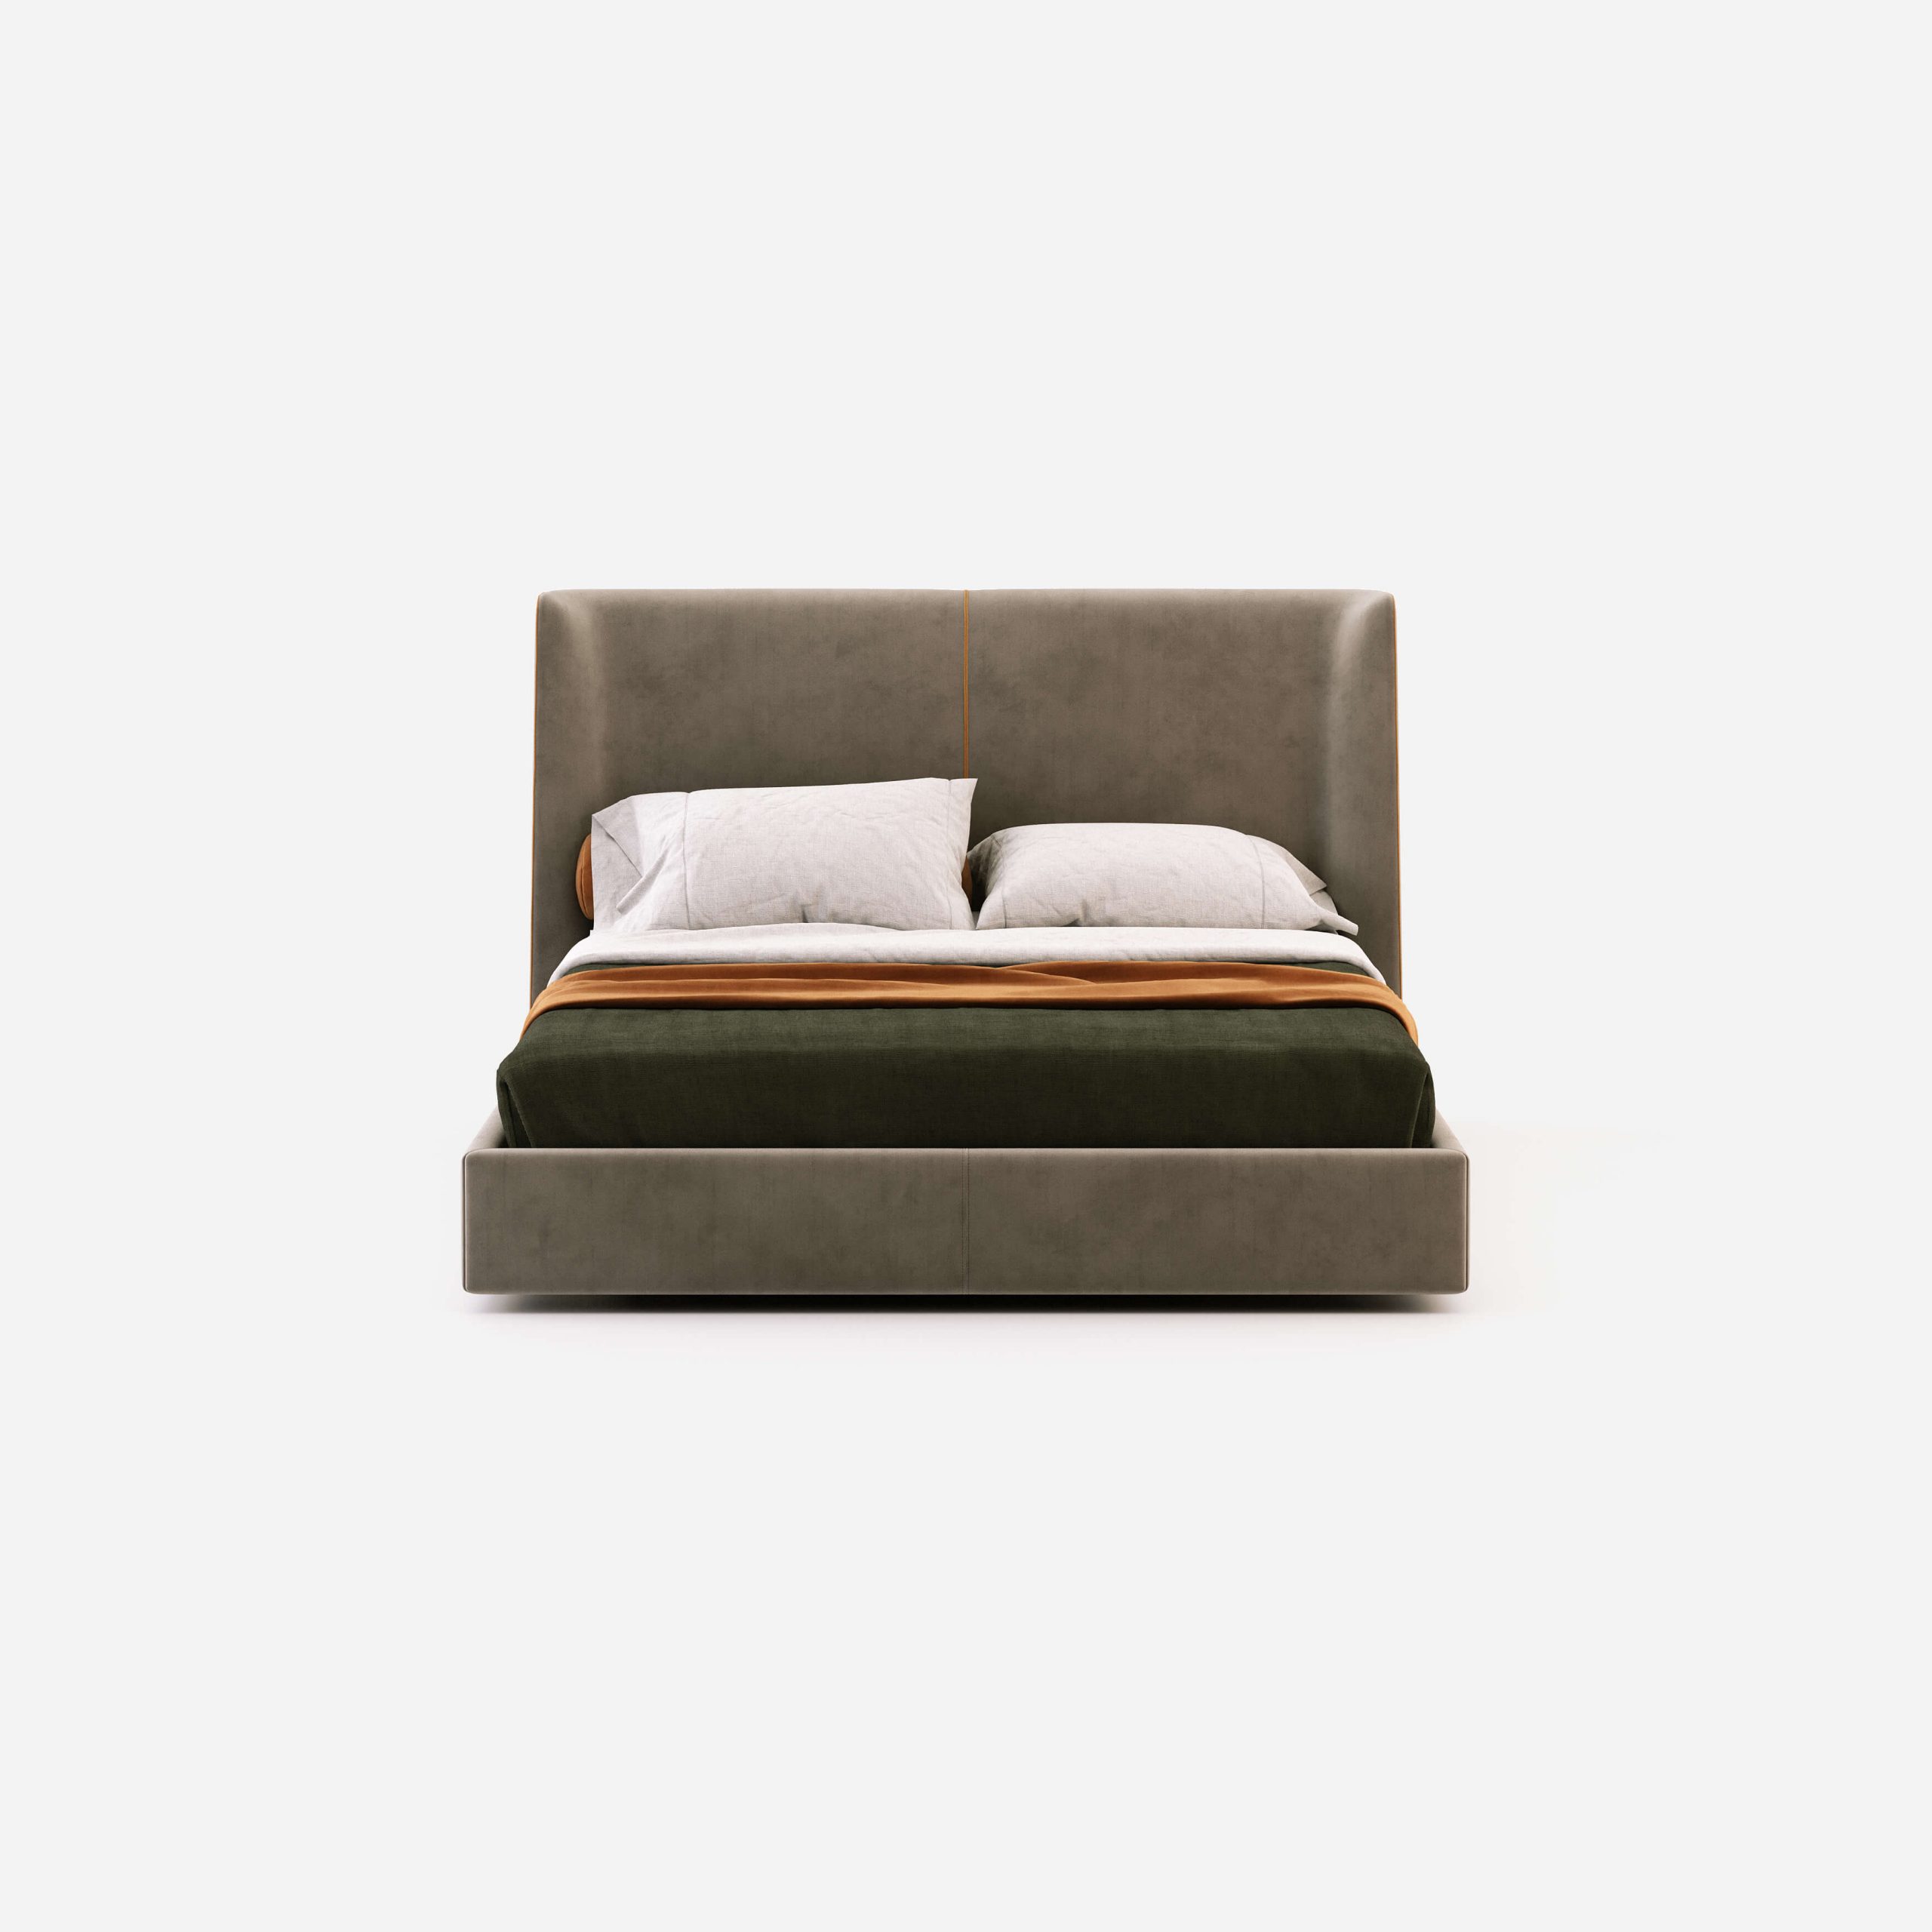 Echo Bed By Domkapa Bedrooms Design Meets Comfort